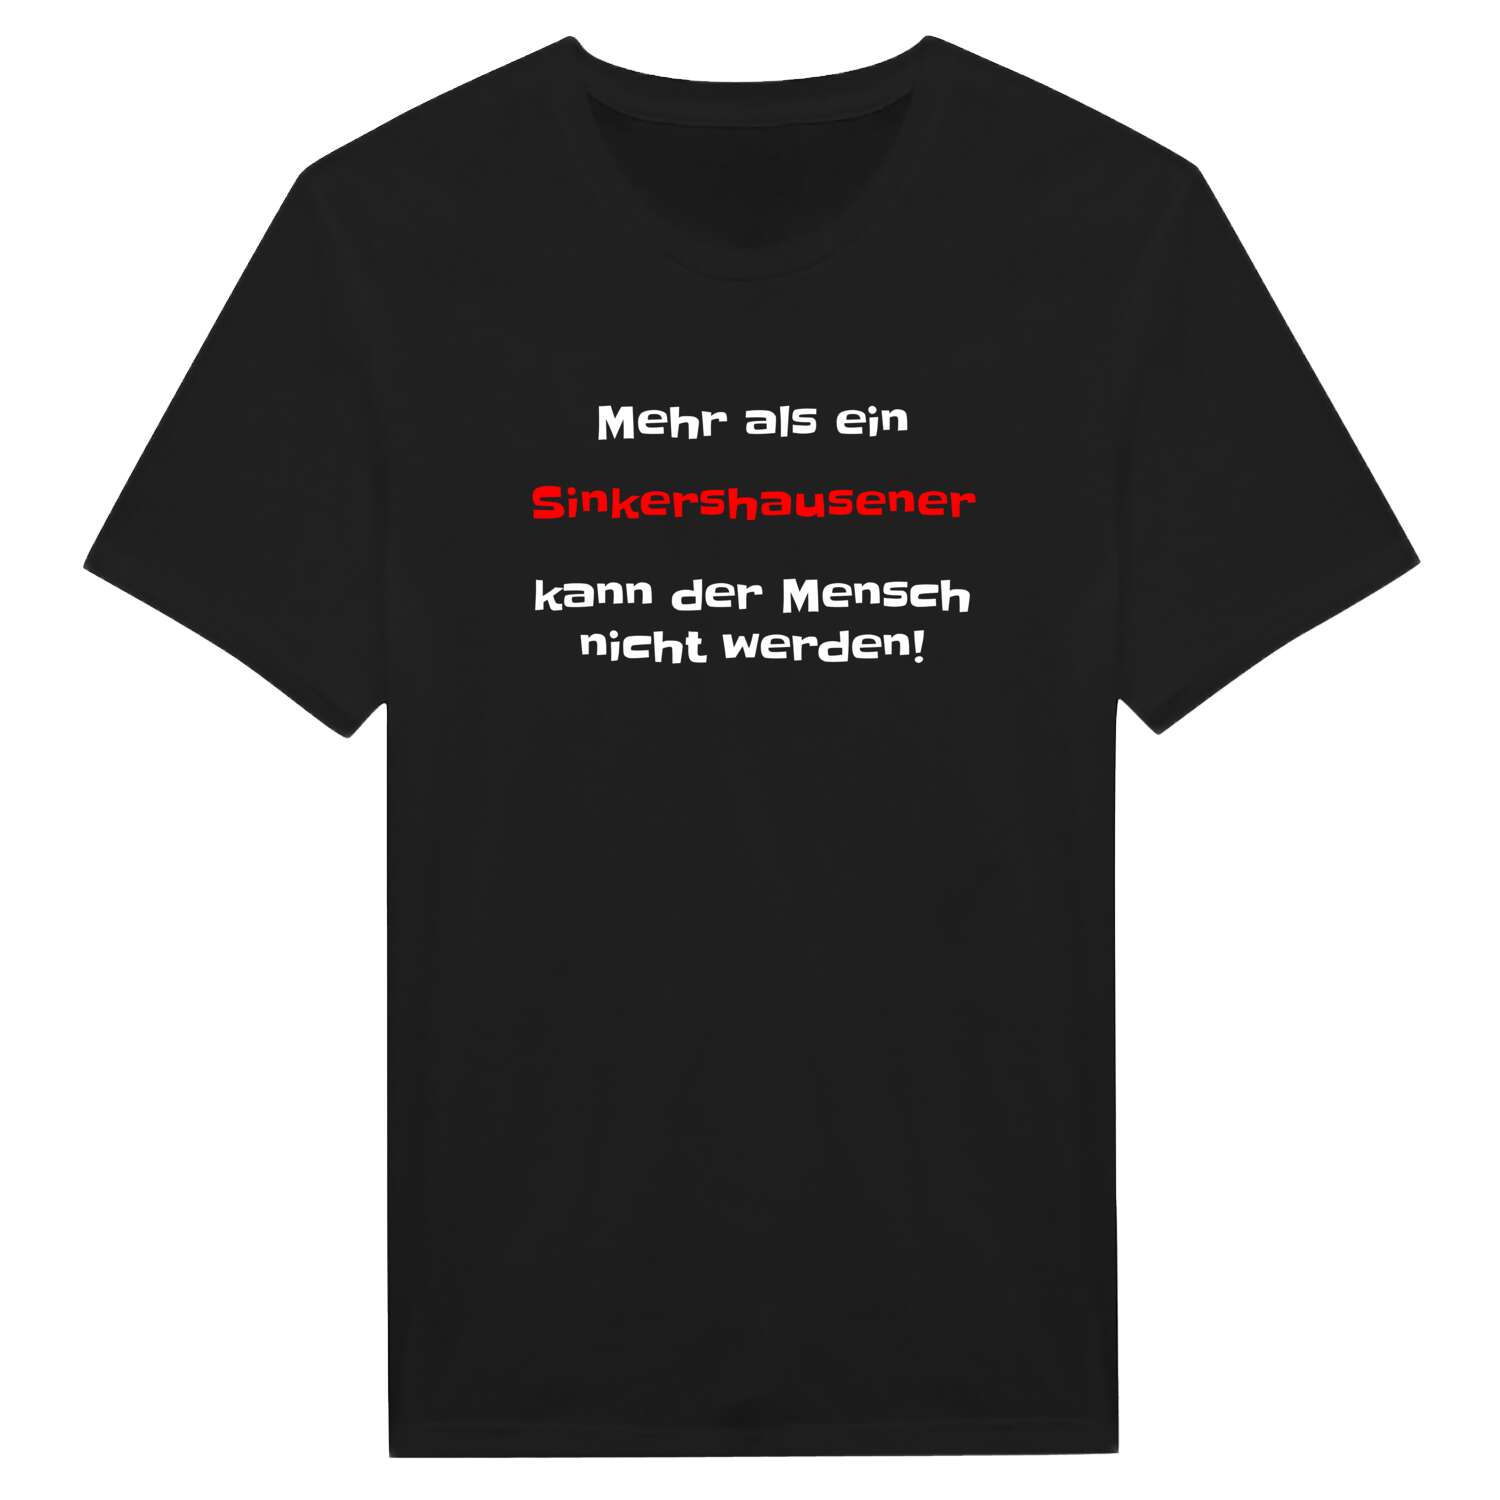 Sinkershausen T-Shirt »Mehr als ein«